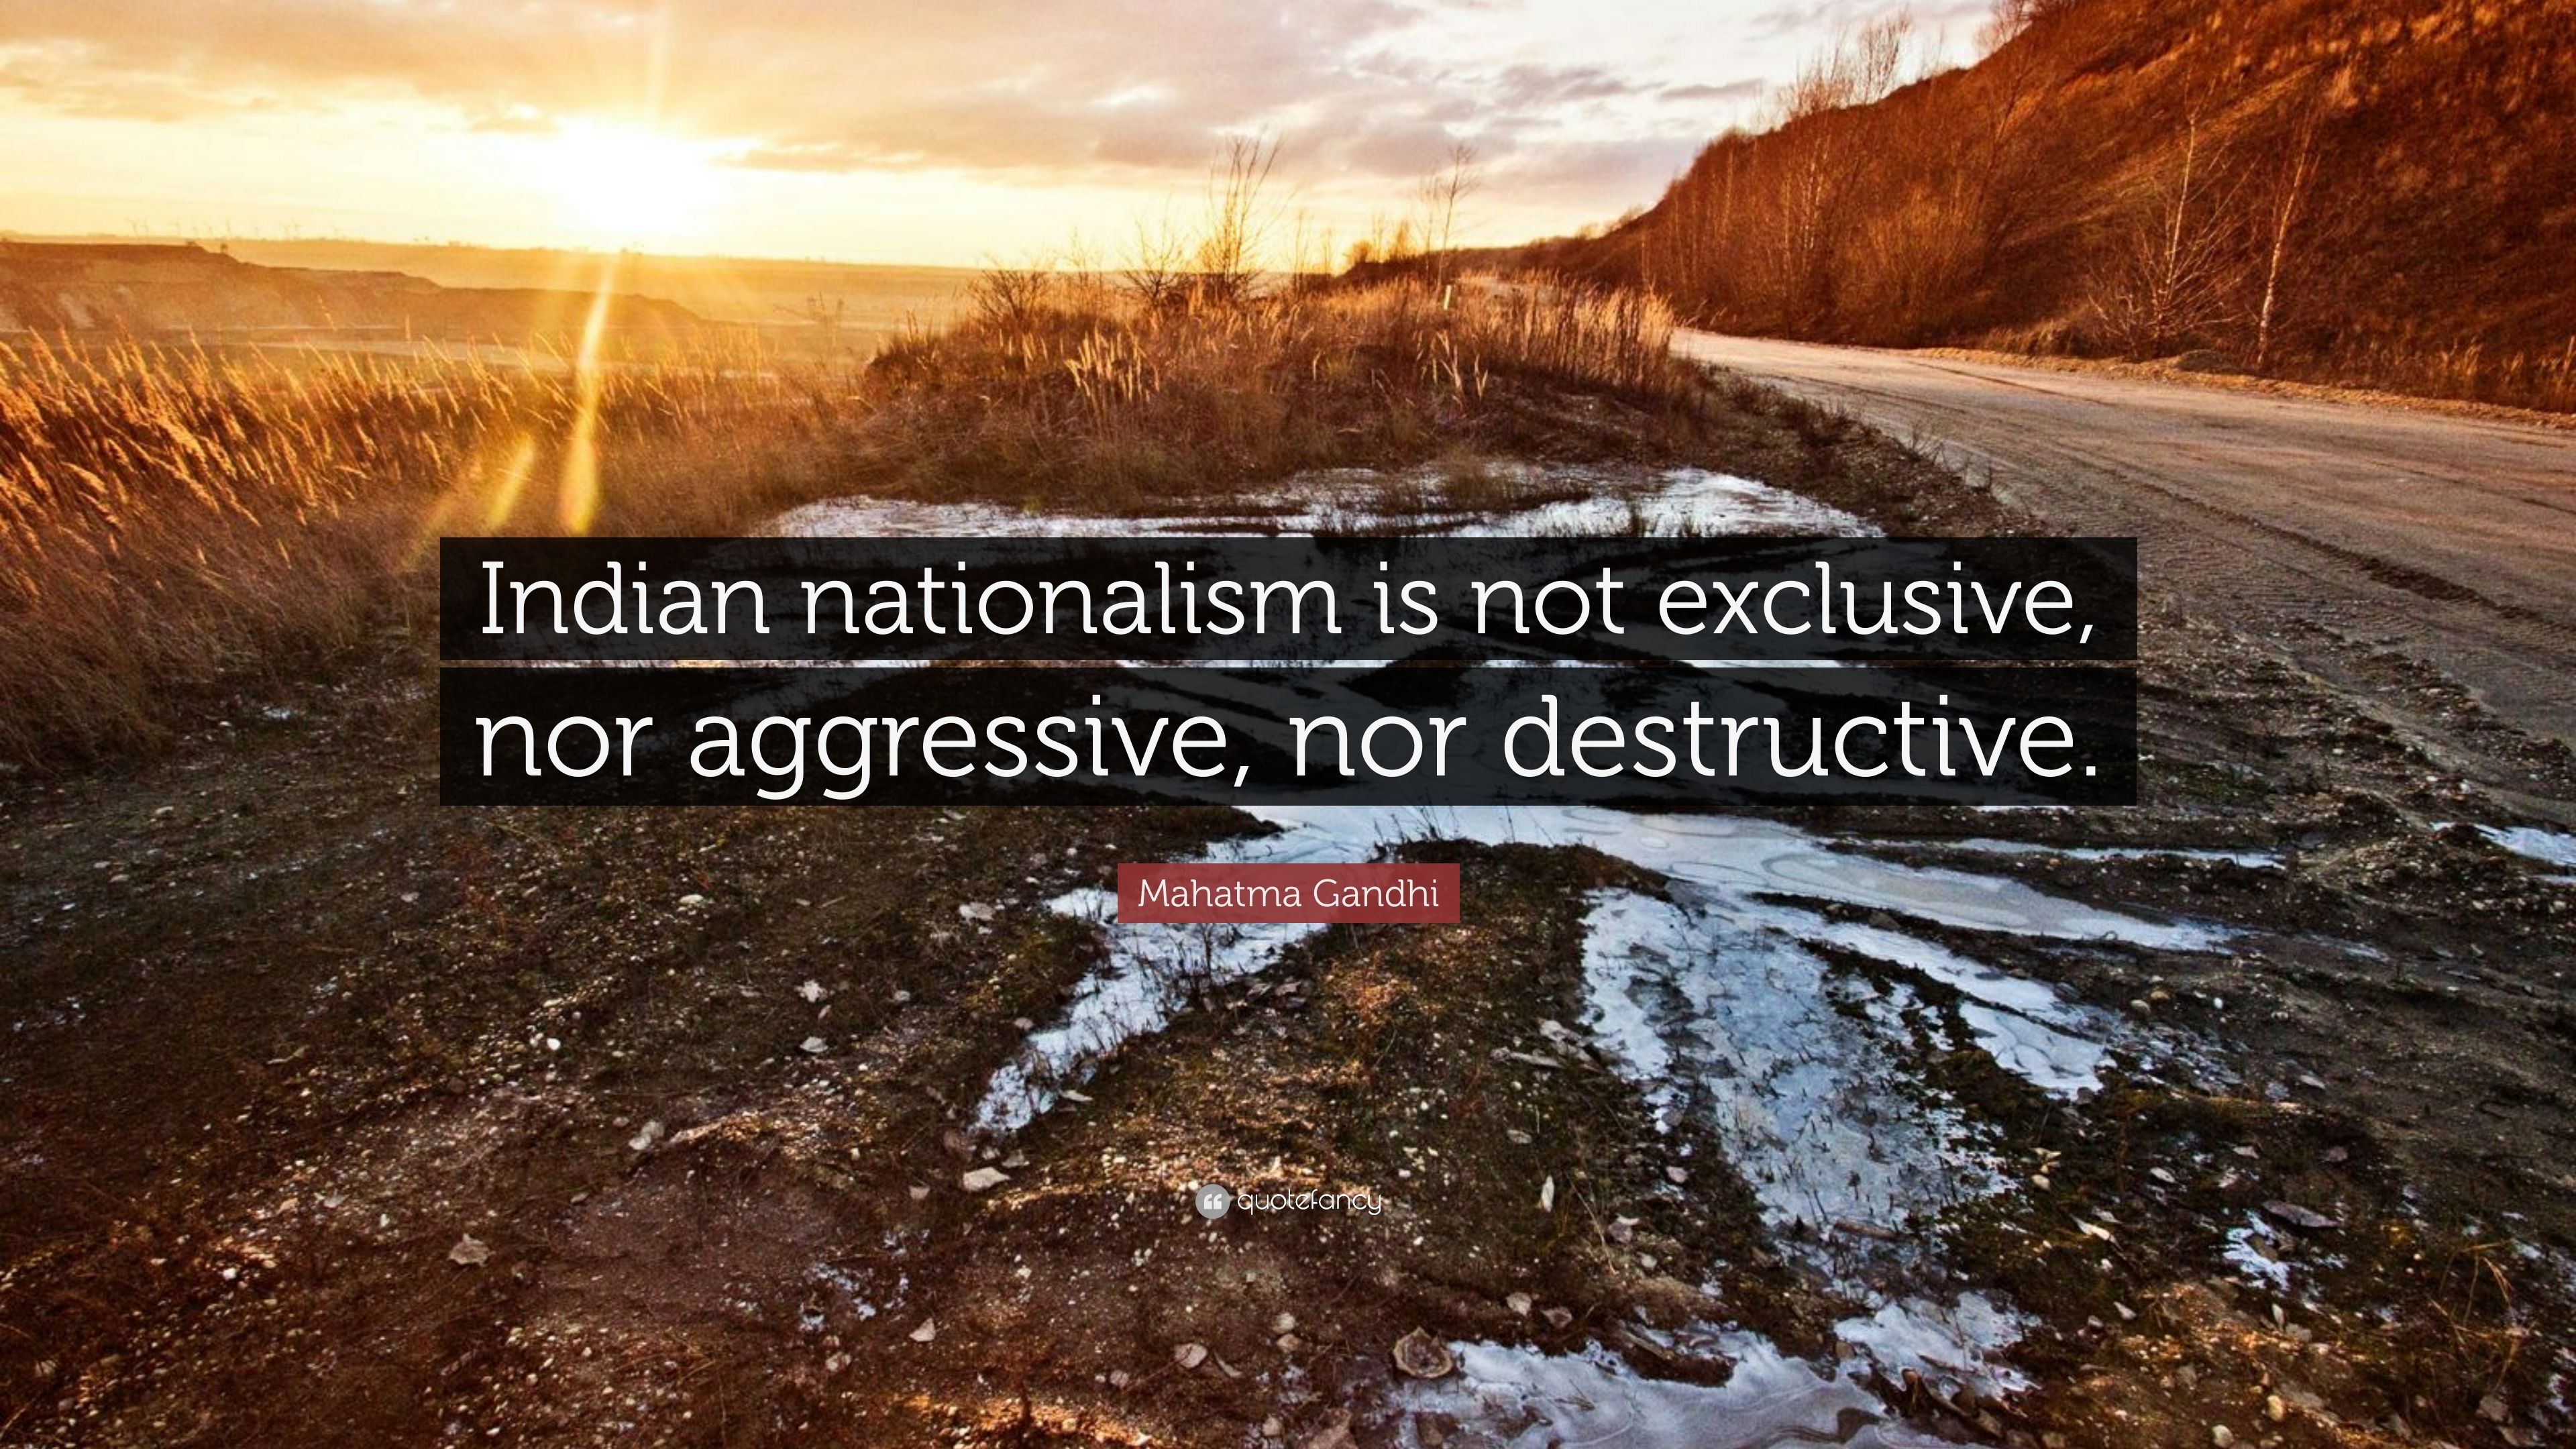 Mahatma Gandhi Quote: “Indian nationalism is not exclusive, nor